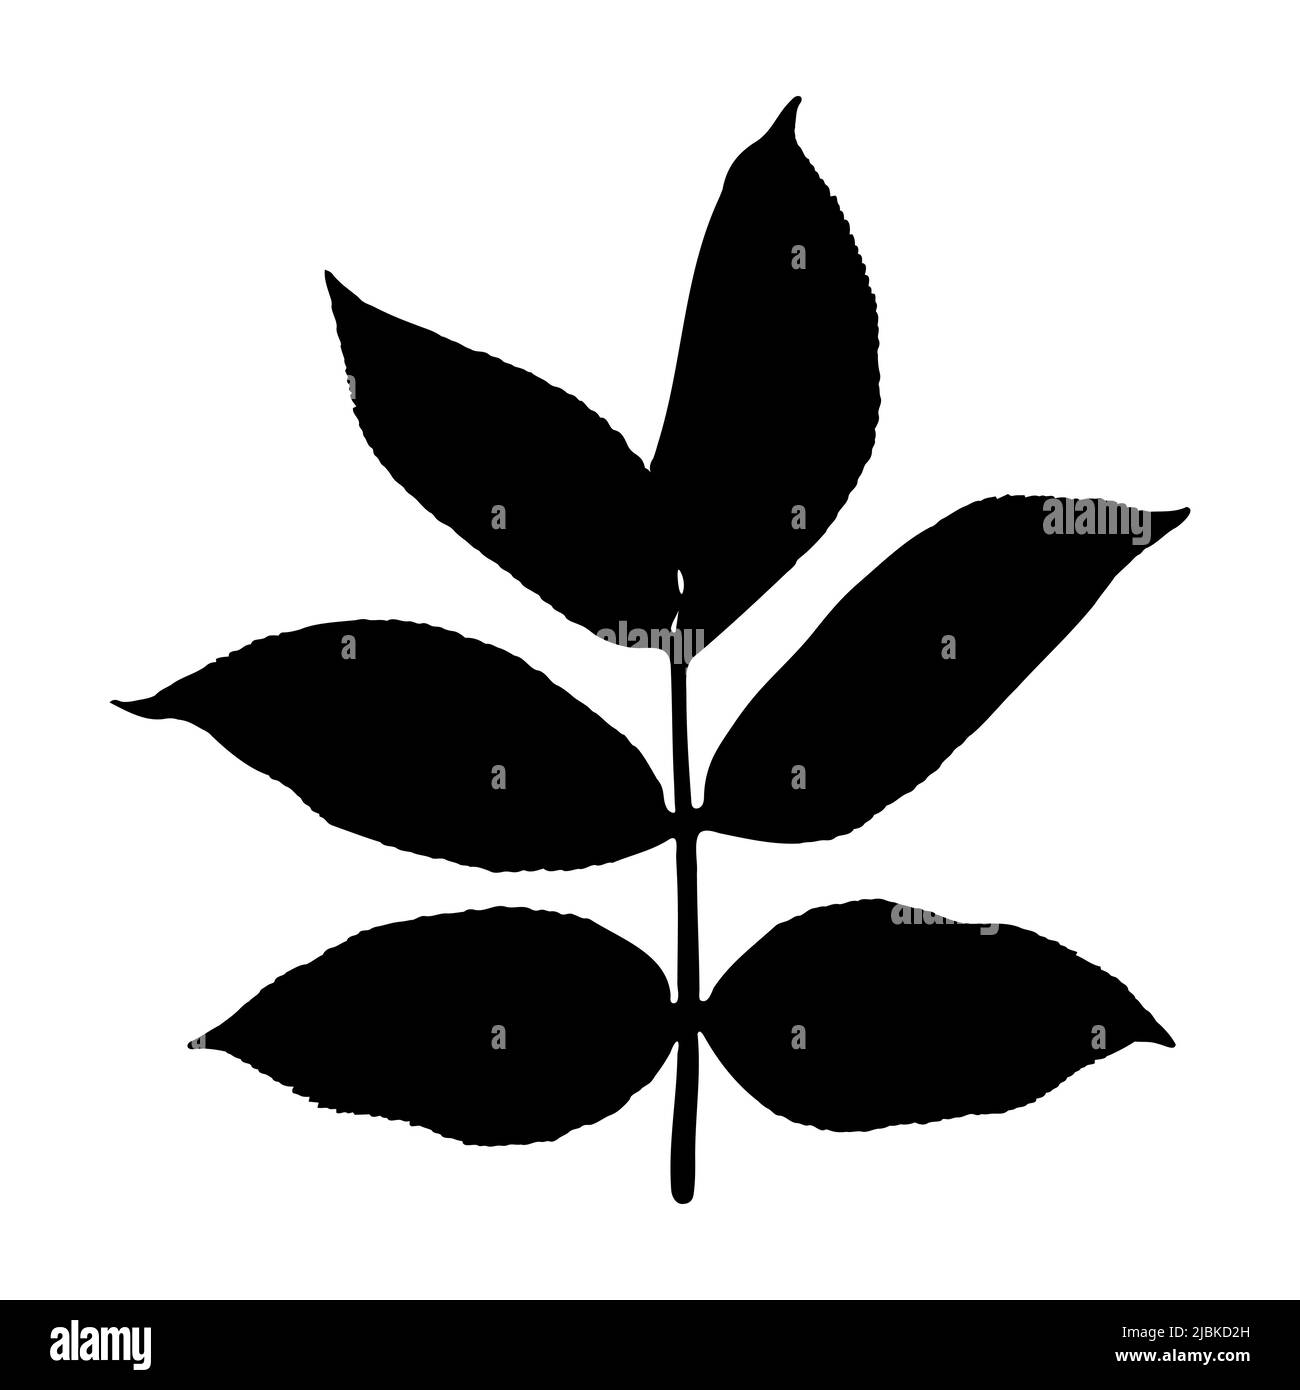 Die Kontur eines Baumes oder Grases mit Blättern. Schwarzer Umriss einer Strauchzweigpflanze, isoliert auf weißem Hintergrund. Vektorgrafik. Stock Vektor